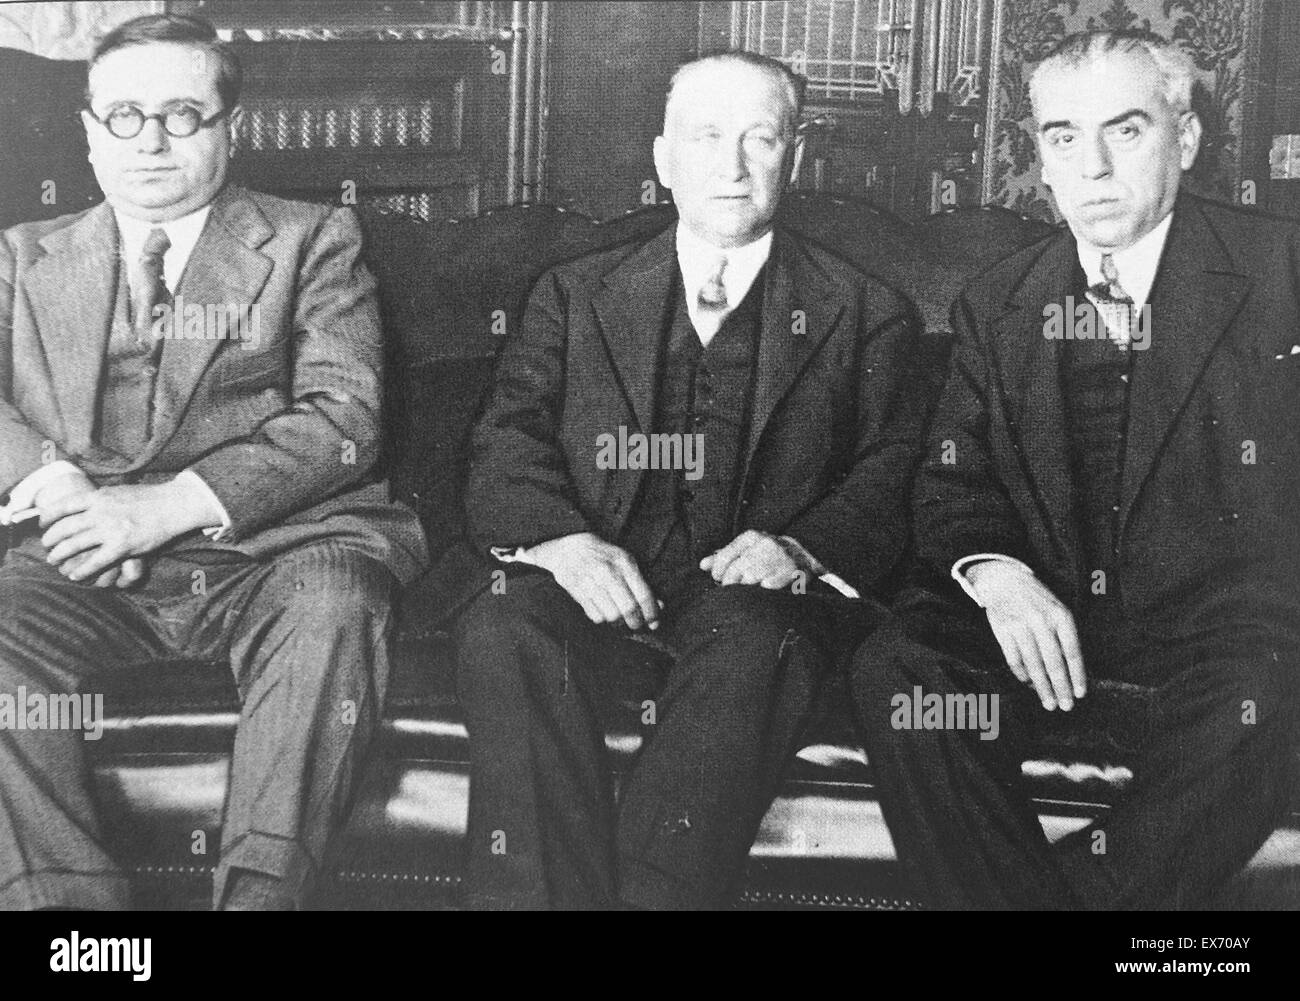 De gauche à droite : les politiciens socialistes espagnol Luis Araquistáin Quevedo, Largo Caballero et Antoni Fabra i Ribas. Luis Araquistáin Quevedo (1886 - 1959) écrivain et homme politique espagnol. L'ambassadeur d'Allemagne 1932-36. L'ambassadeur de France 1936-39. Francisco L Banque D'Images